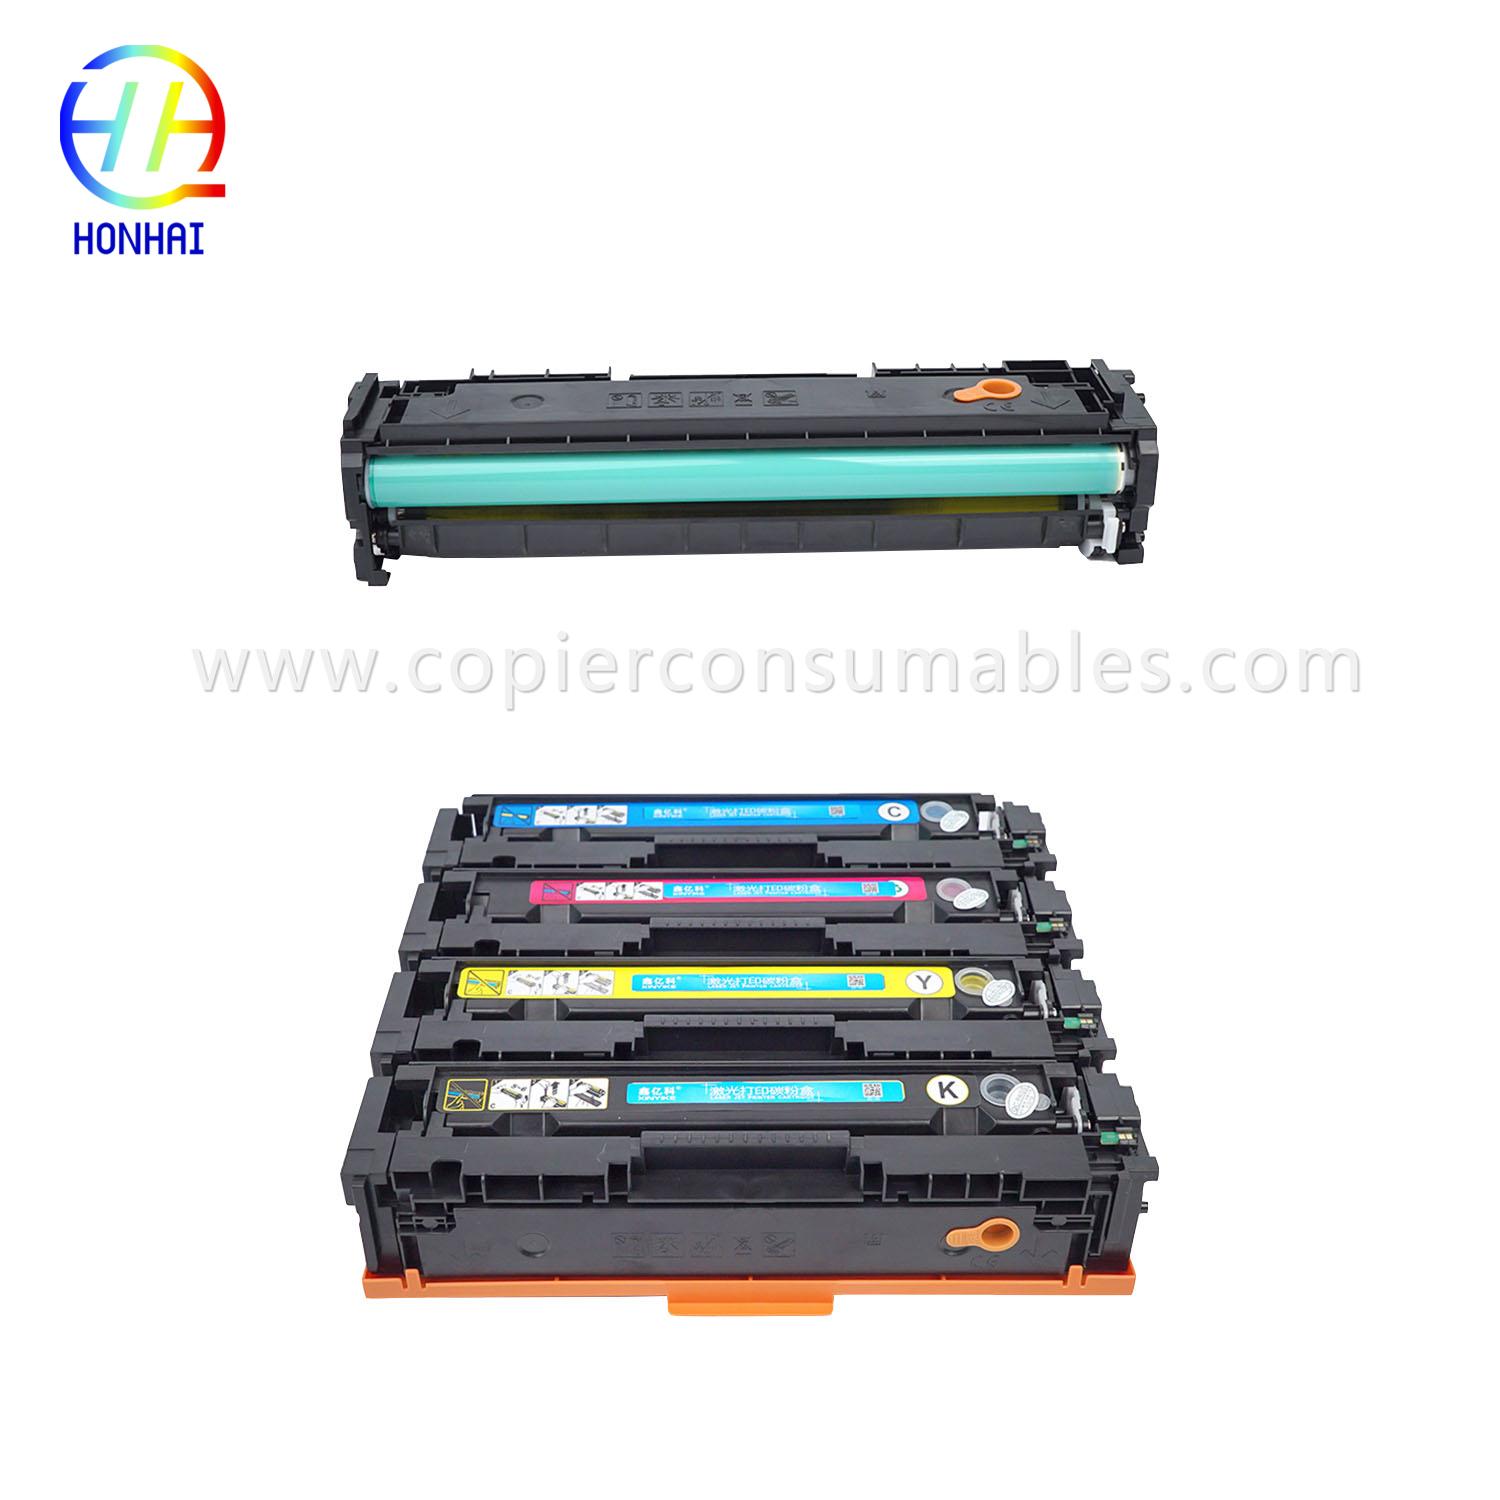 Color Toner Cartridges HP Laserjet PRO M252 M277 (CF403A) 拷贝